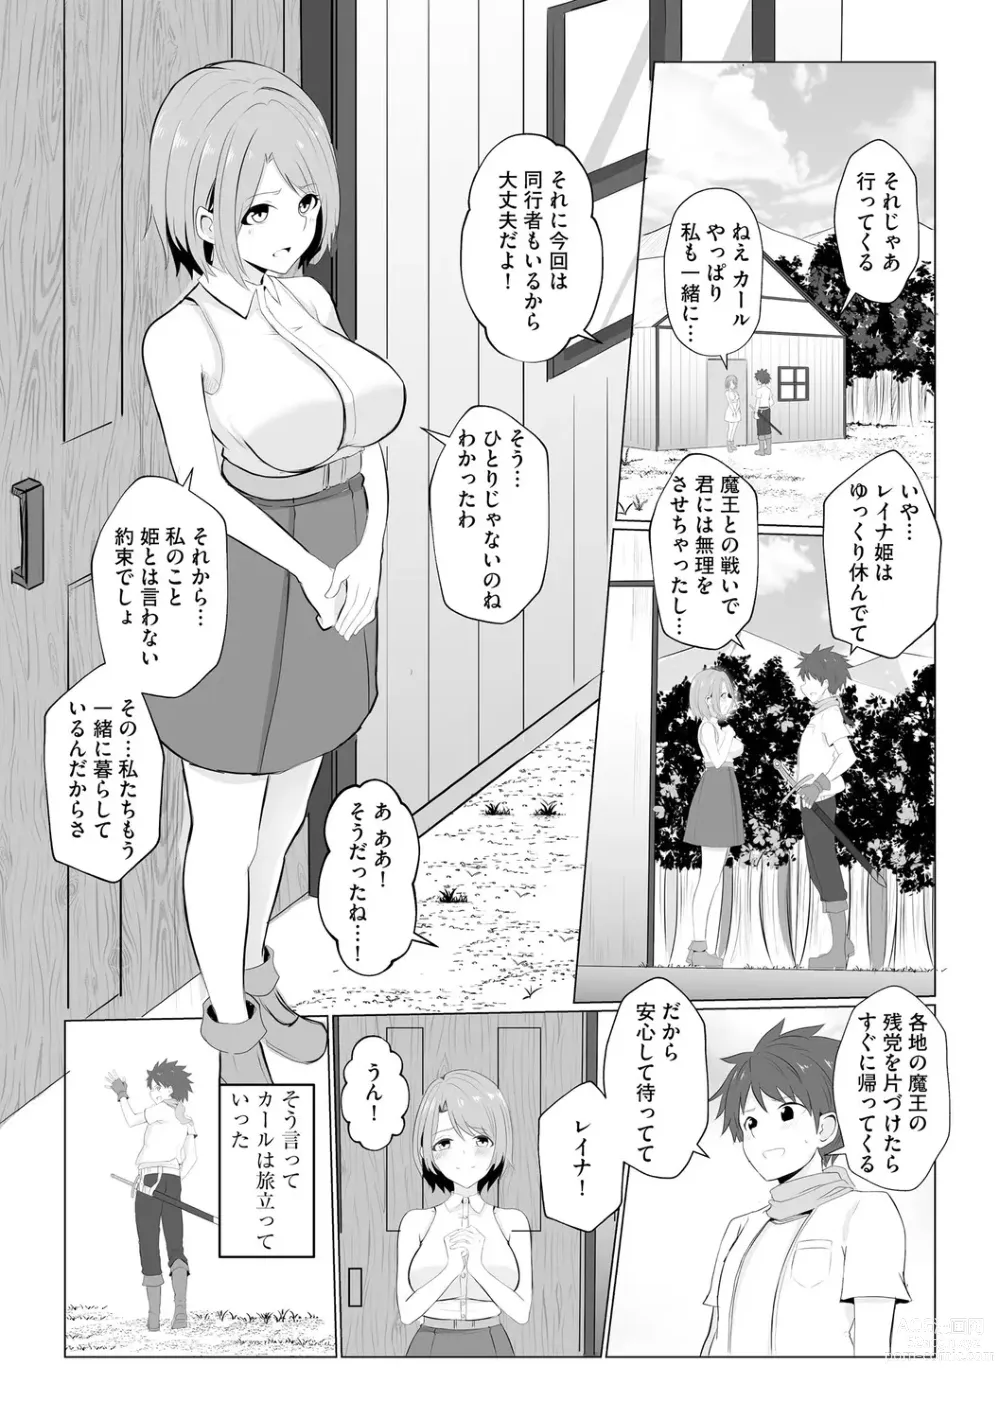 Page 7 of manga Watashi ga Inma ni Ochiru made